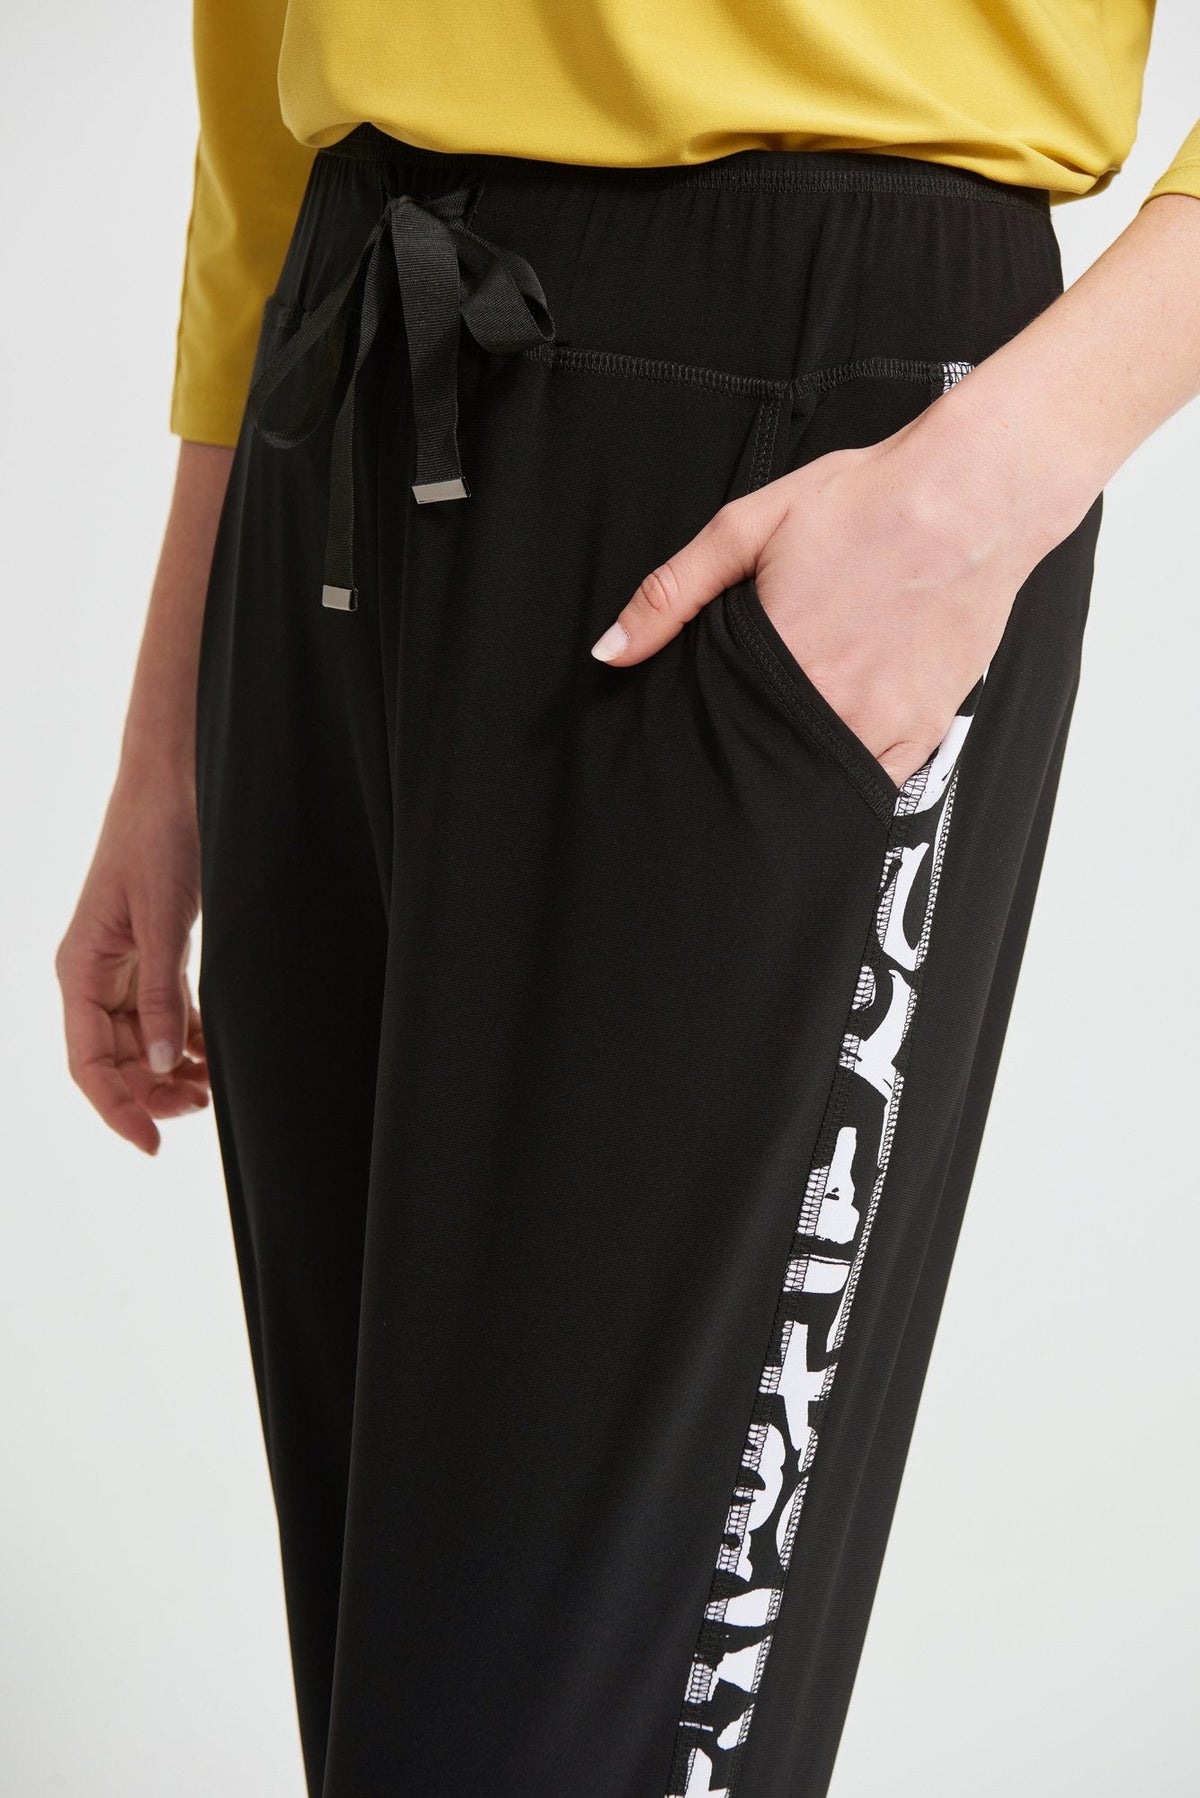 Pantalon Joseph Ribkoff - 213627 couleur BLACK/VANILLA - Boutique Vvög, référence en mode pour homme et femmes